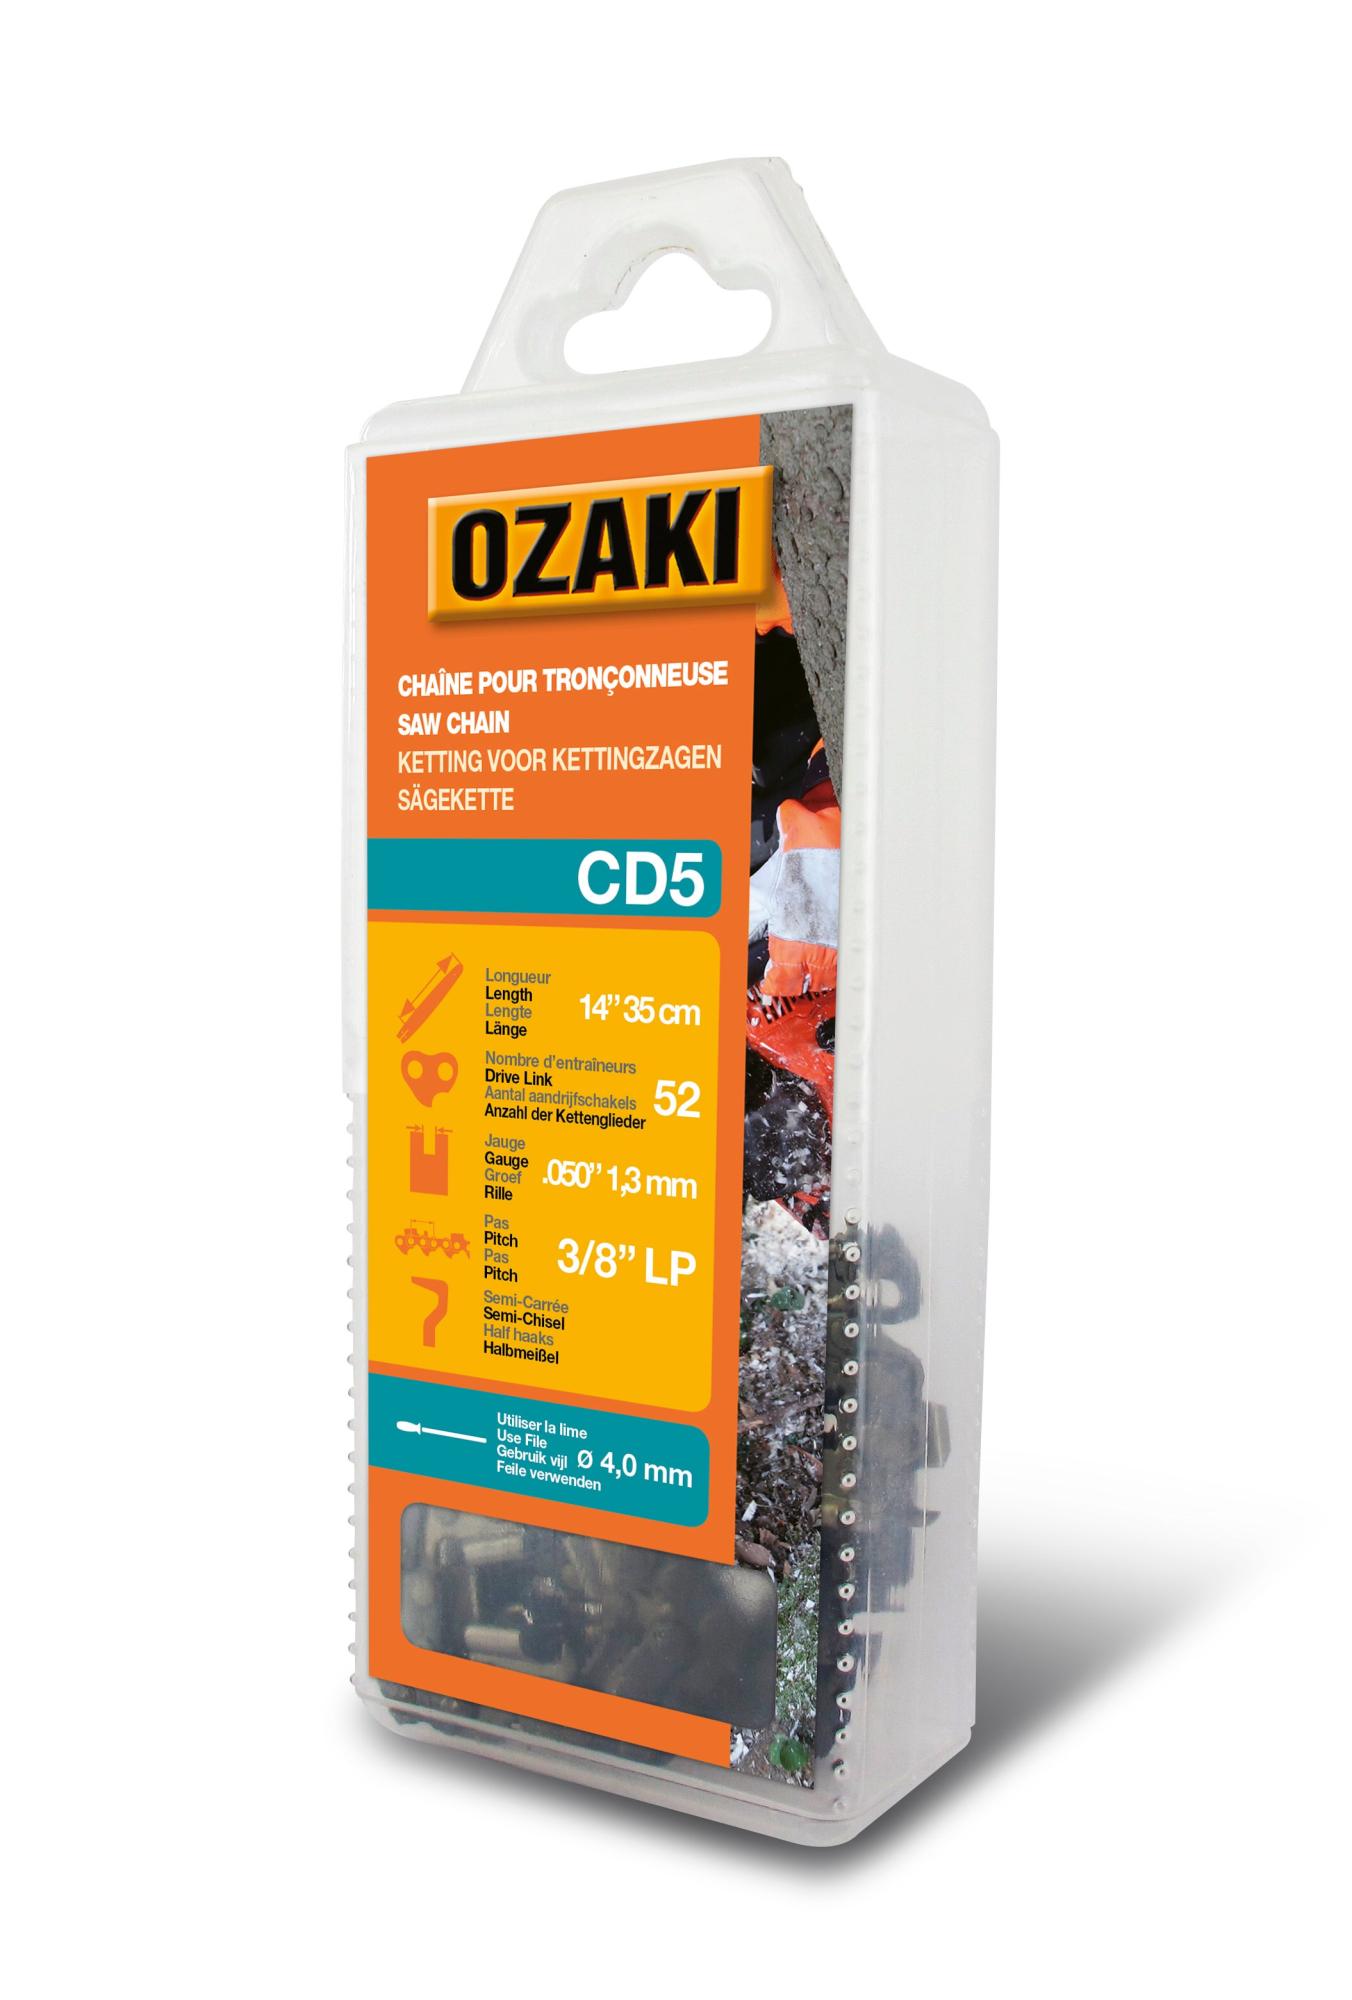 Chaîne de tronçonneuse OZAKI CD5 Pas de 3/8LP Jauge 1,3mm 35cm 52